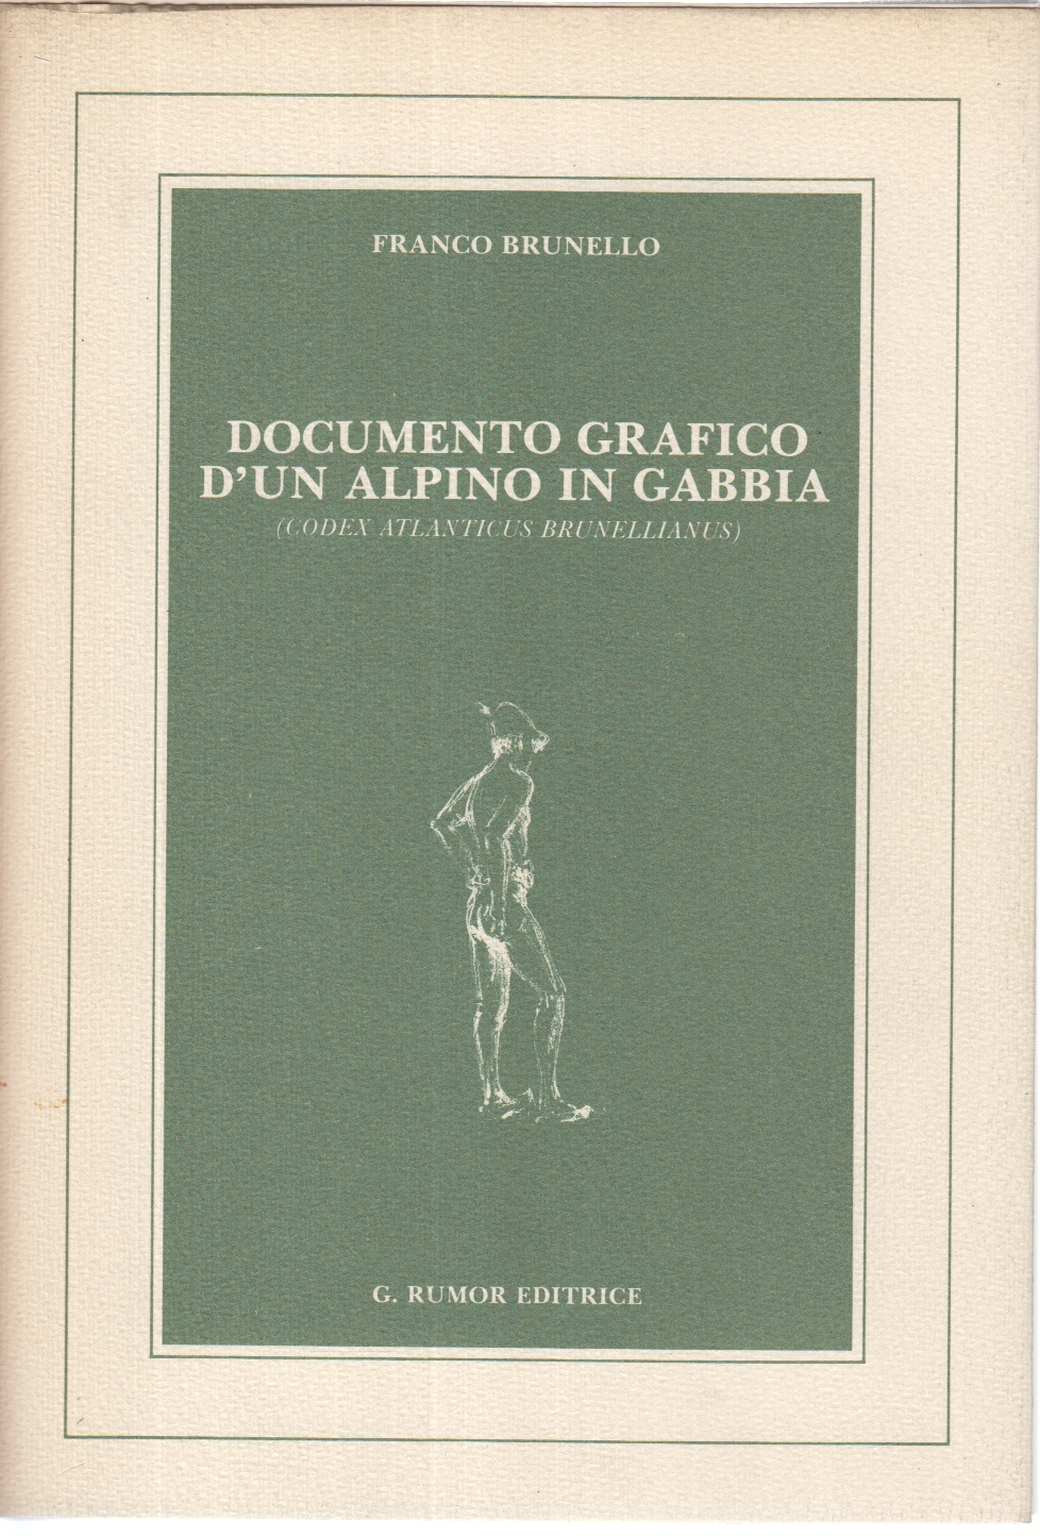 Documento grafico d'un alpino in gabbia, Franco Brunello